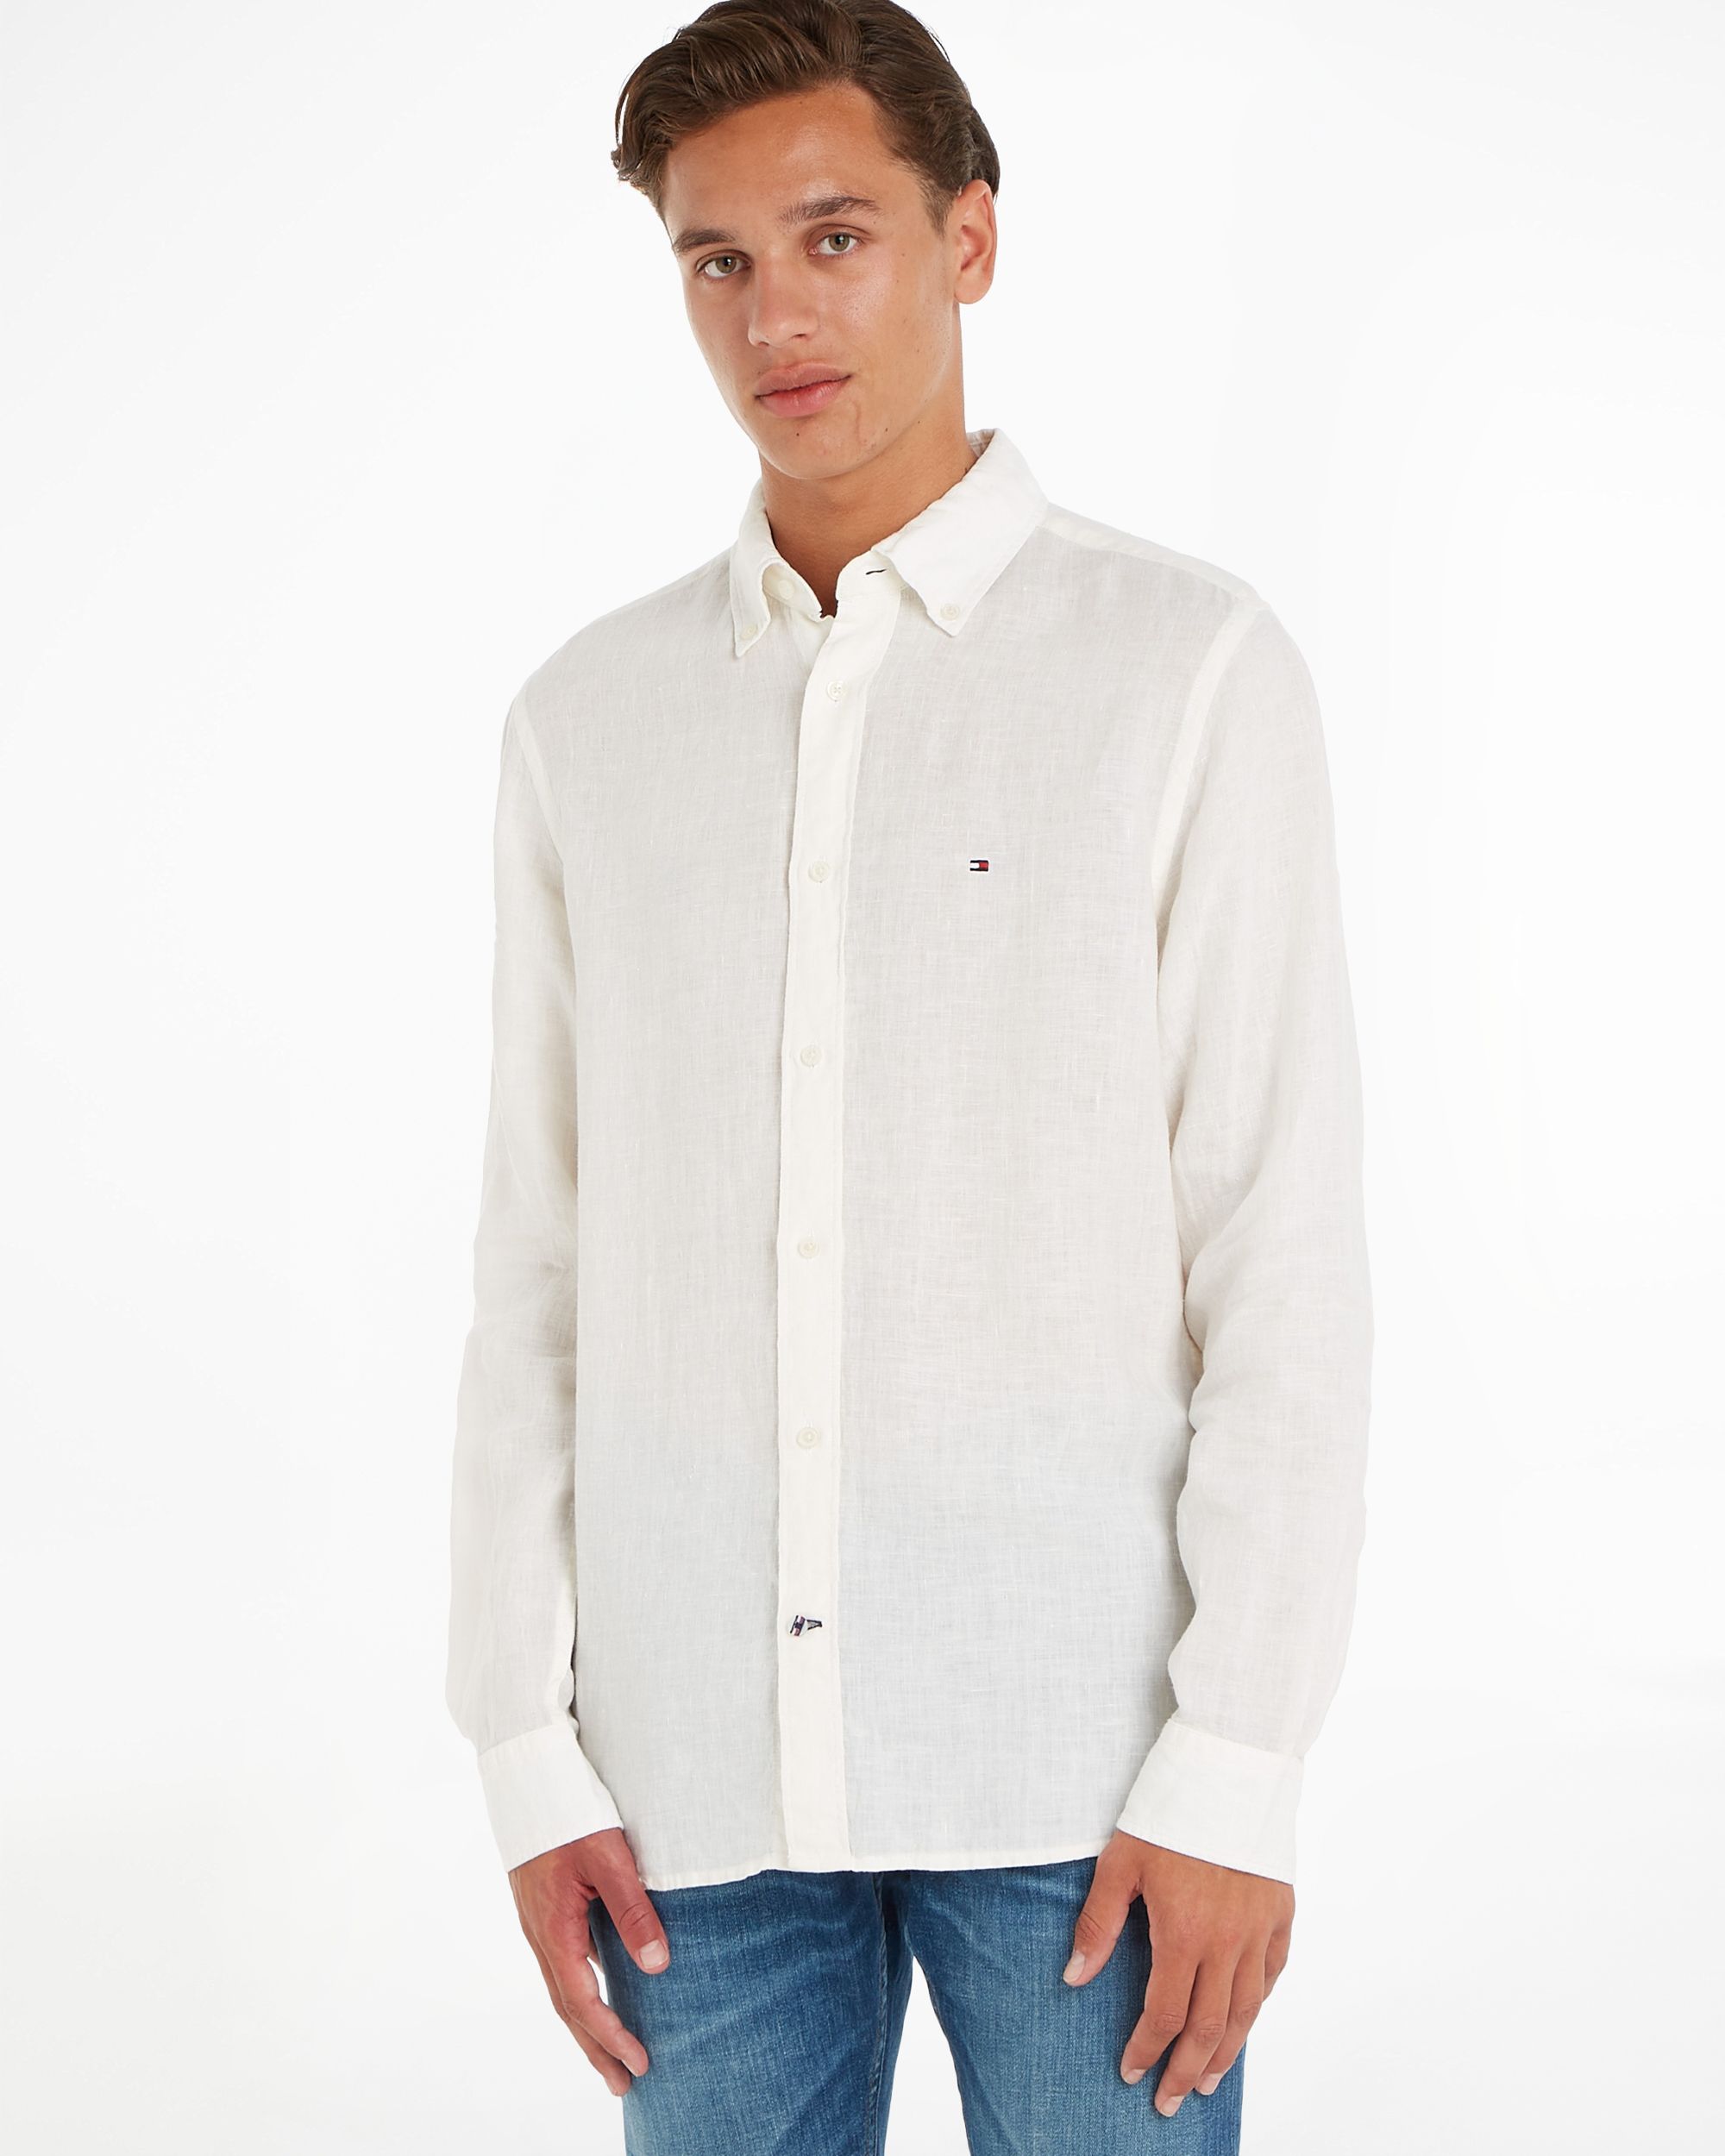 pond brand pastel Tommy Hilfiger Menswear Casual Overhemd LM | Shop nu - OFM.